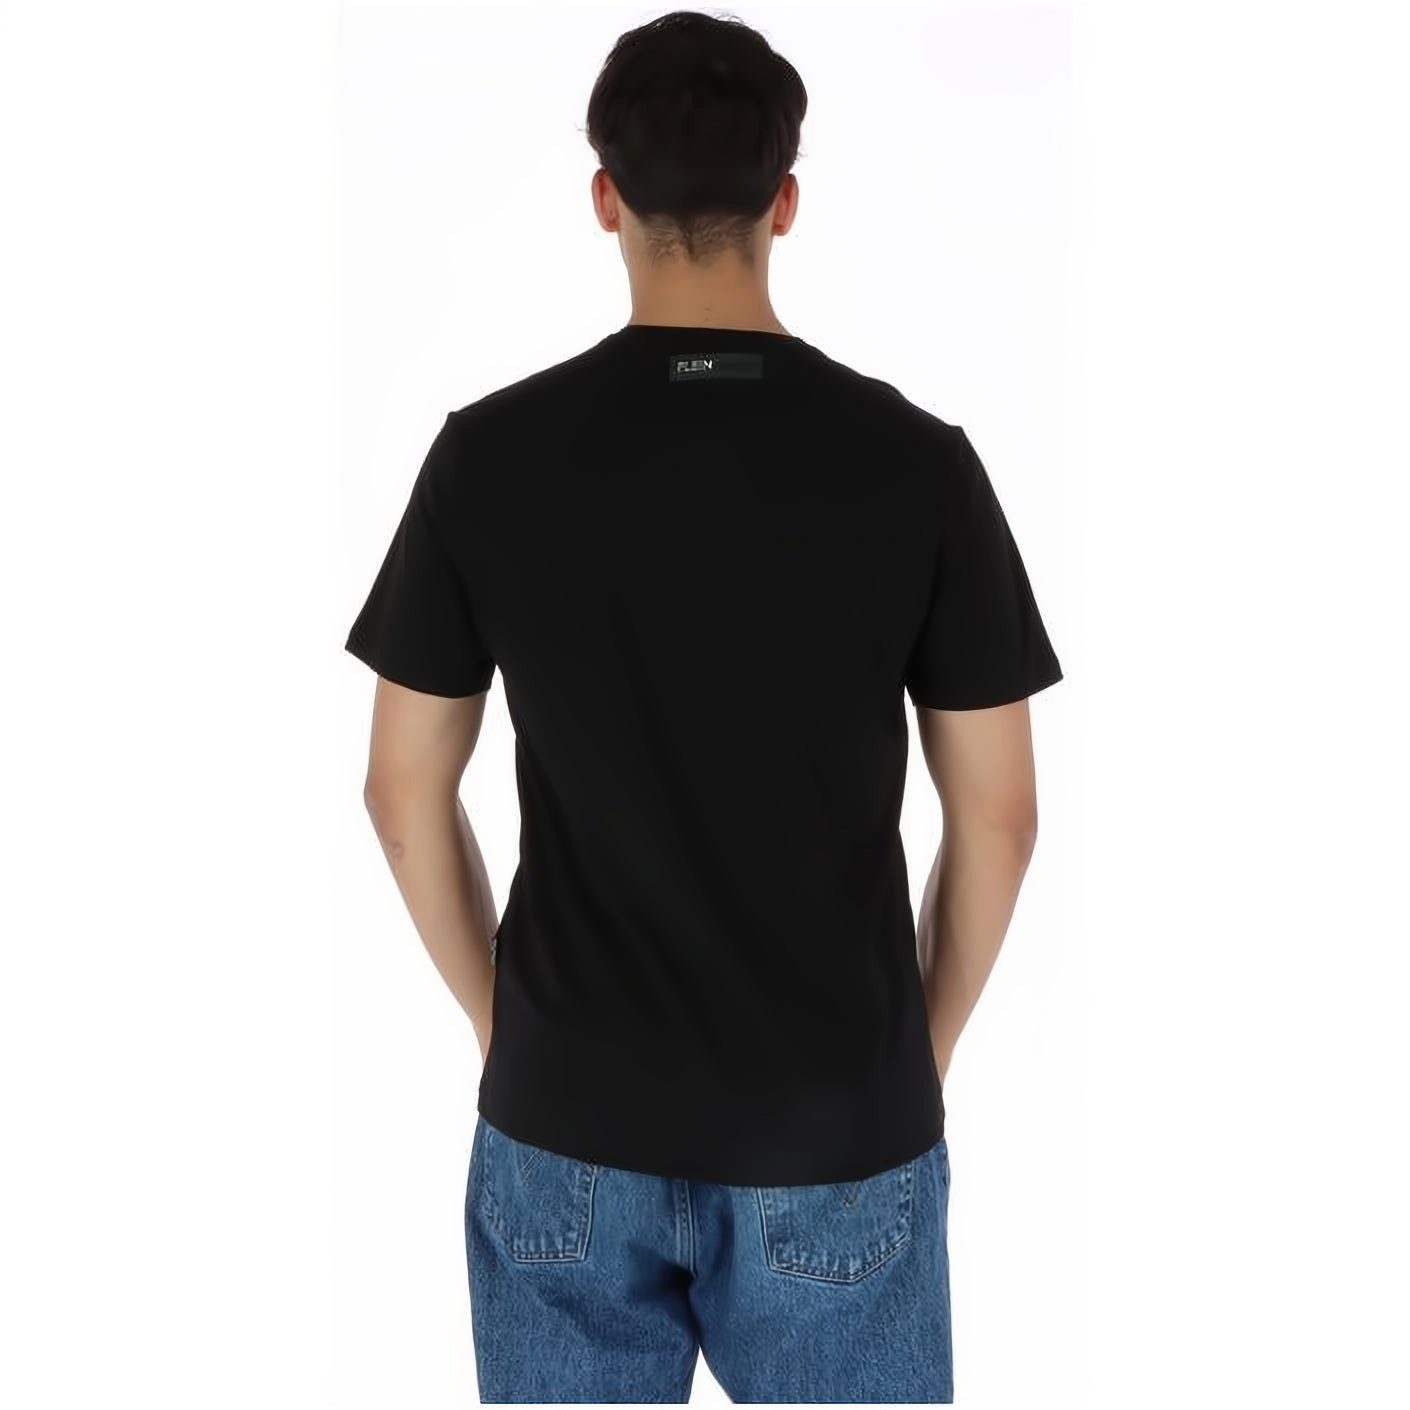 PLEIN SPORT Farbauswahl Stylischer T-Shirt Tragekomfort, Look, NECK hoher ROUND vielfältige